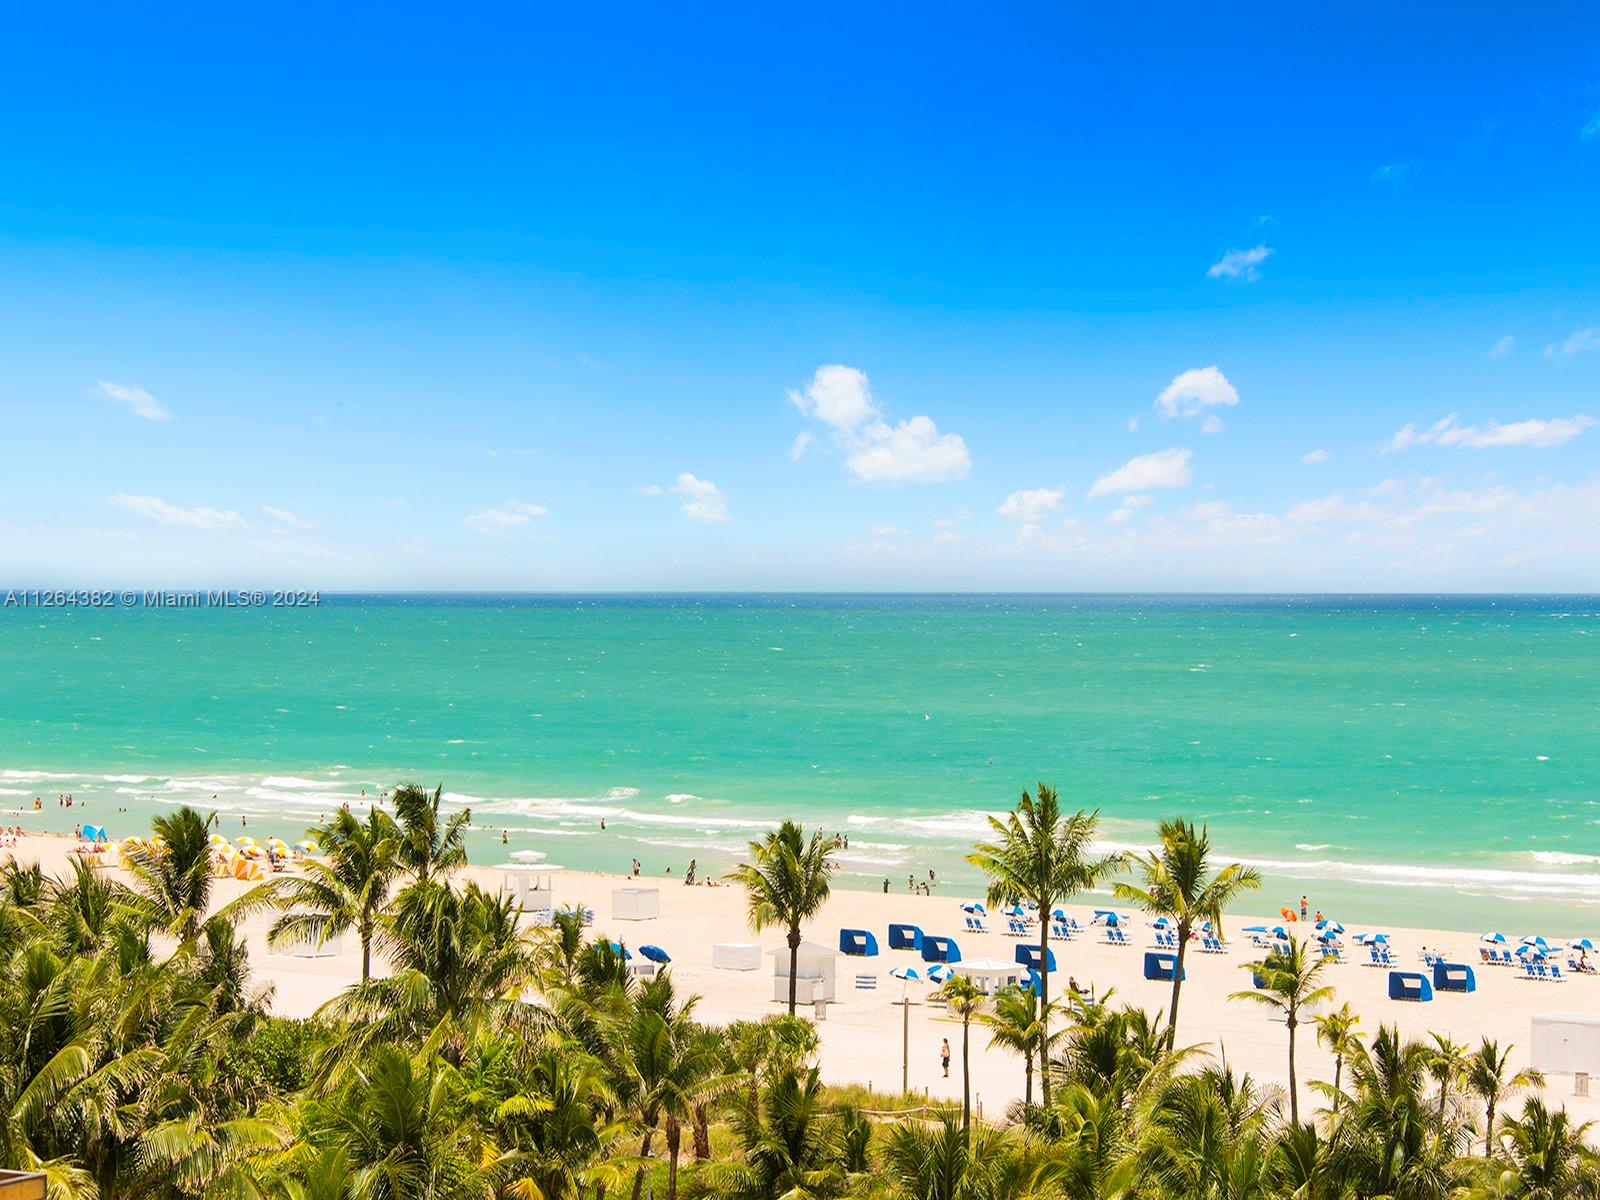 Rental Property at 1500 Ocean Dr 707, Miami Beach, Miami-Dade County, Florida - Bedrooms: 2 
Bathrooms: 2  - $15,000 MO.